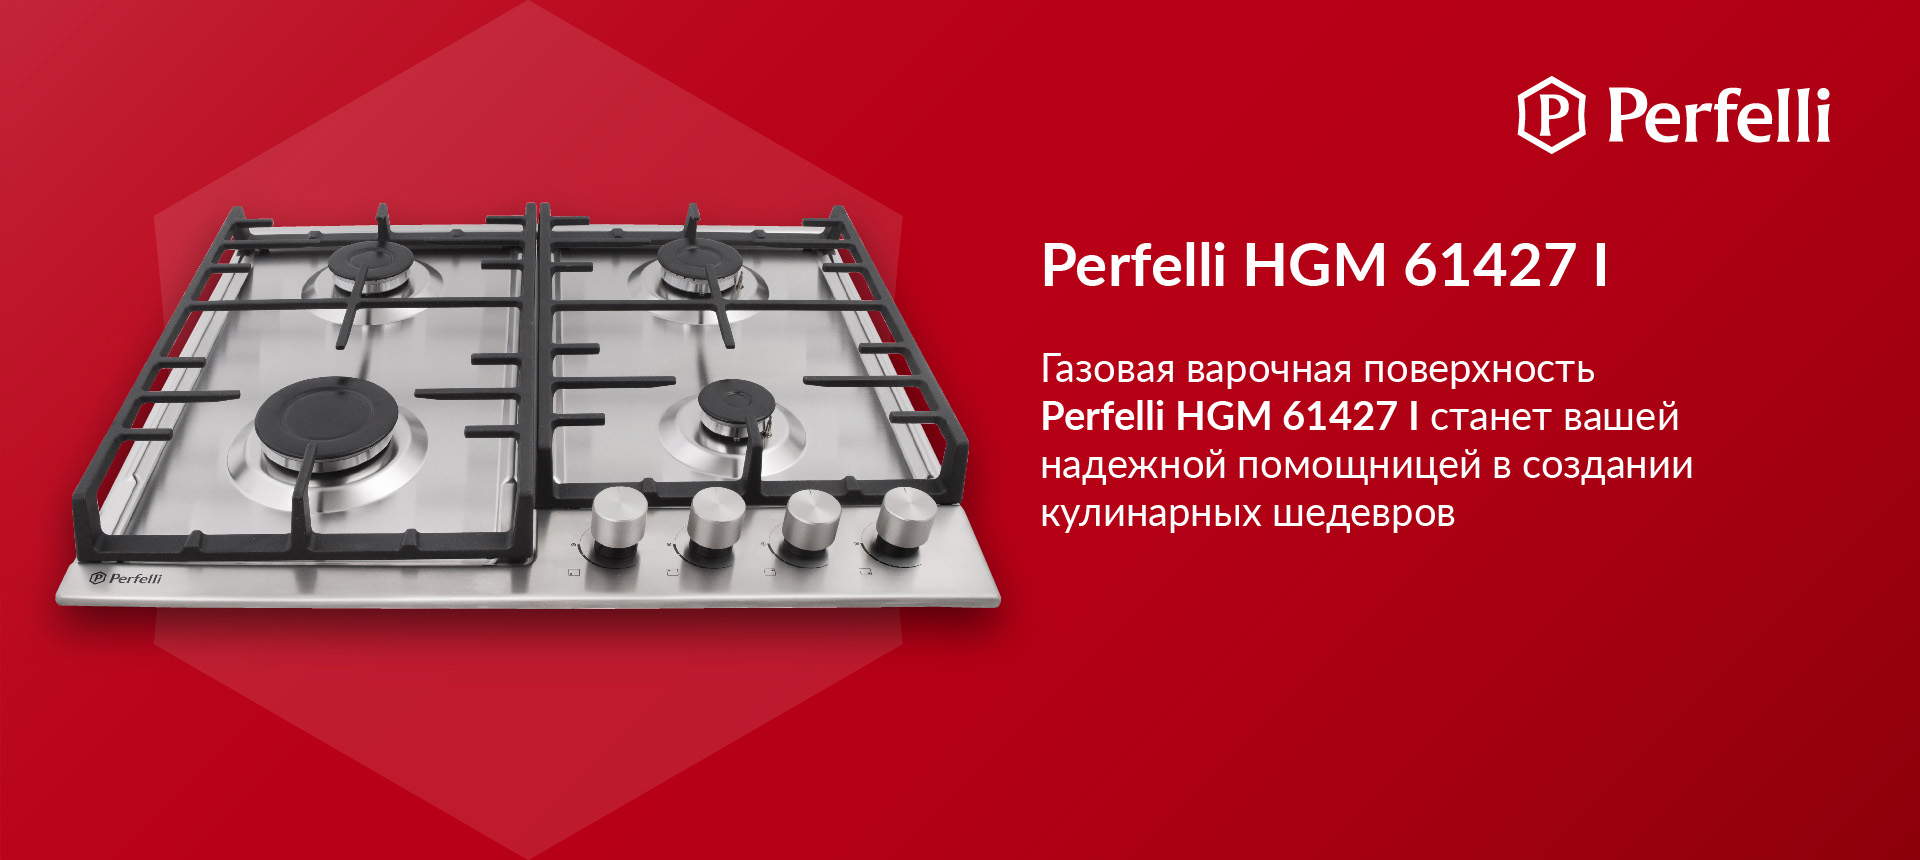 Газовая варочная поверхность на металле Perfelli HGM 61427 I станет вашей надежной помощницей в создании кулинарных шедевров